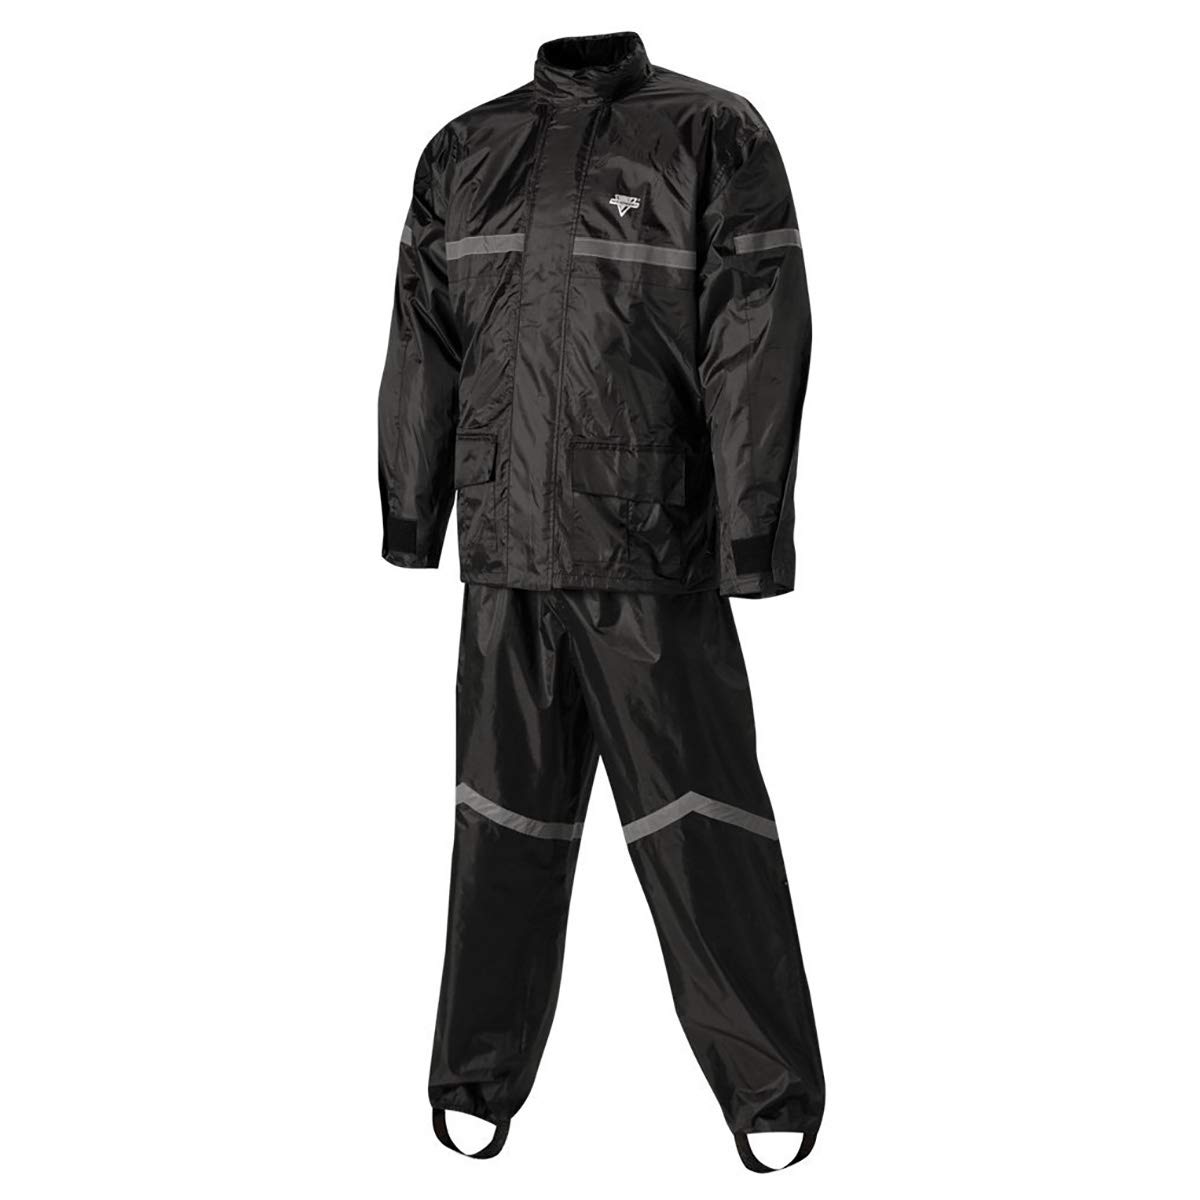 Nelson-Rigg Stormrider Regenanzug, 100% wasserdicht, Hose und Jacke mit reflektierenden Streifen, Schwarz, Größe XXXL von Nelson-Rigg